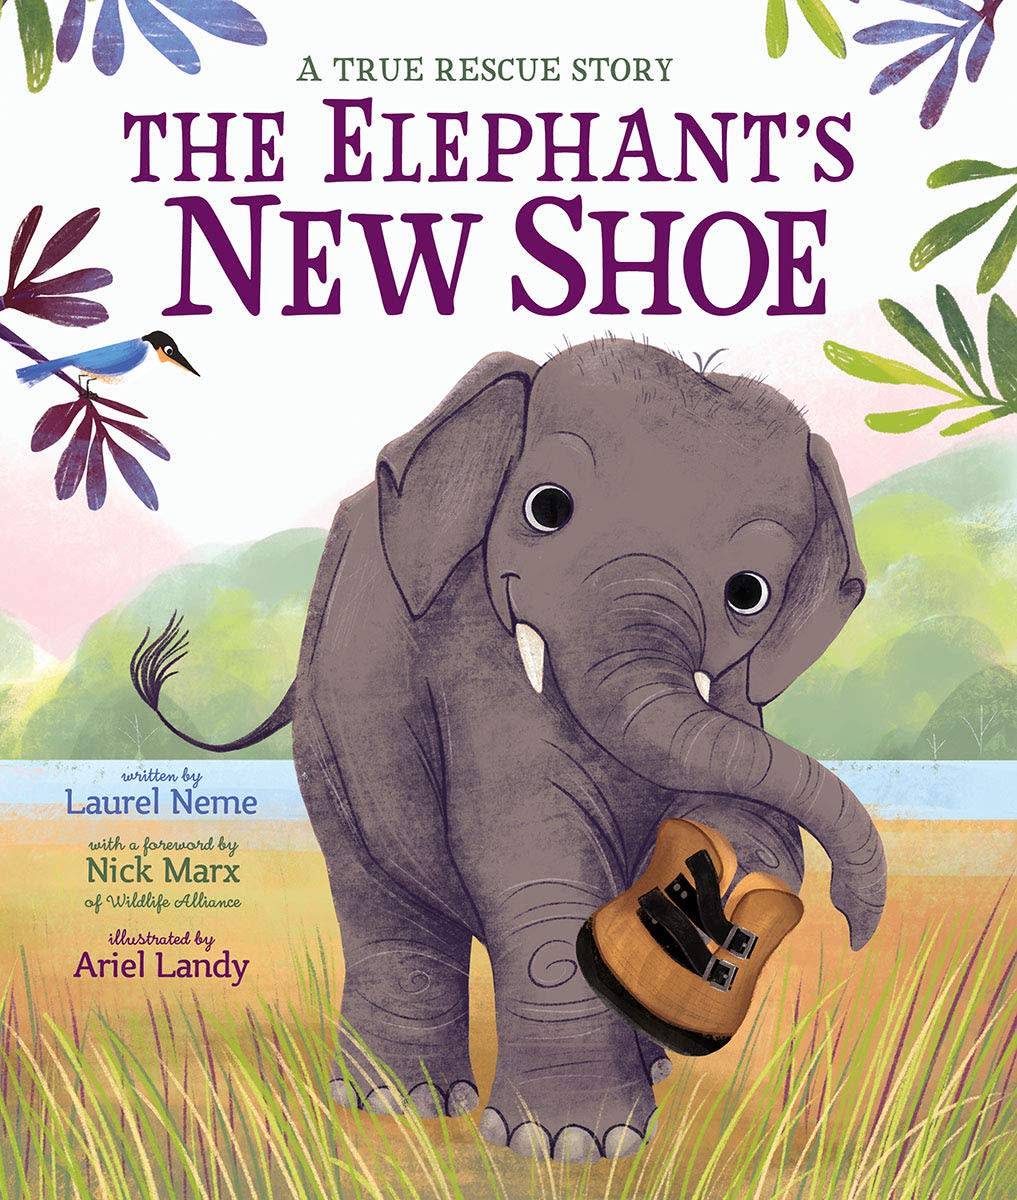 The Elephant’s New Shoe: A True Rescue Story by Laurel Neme